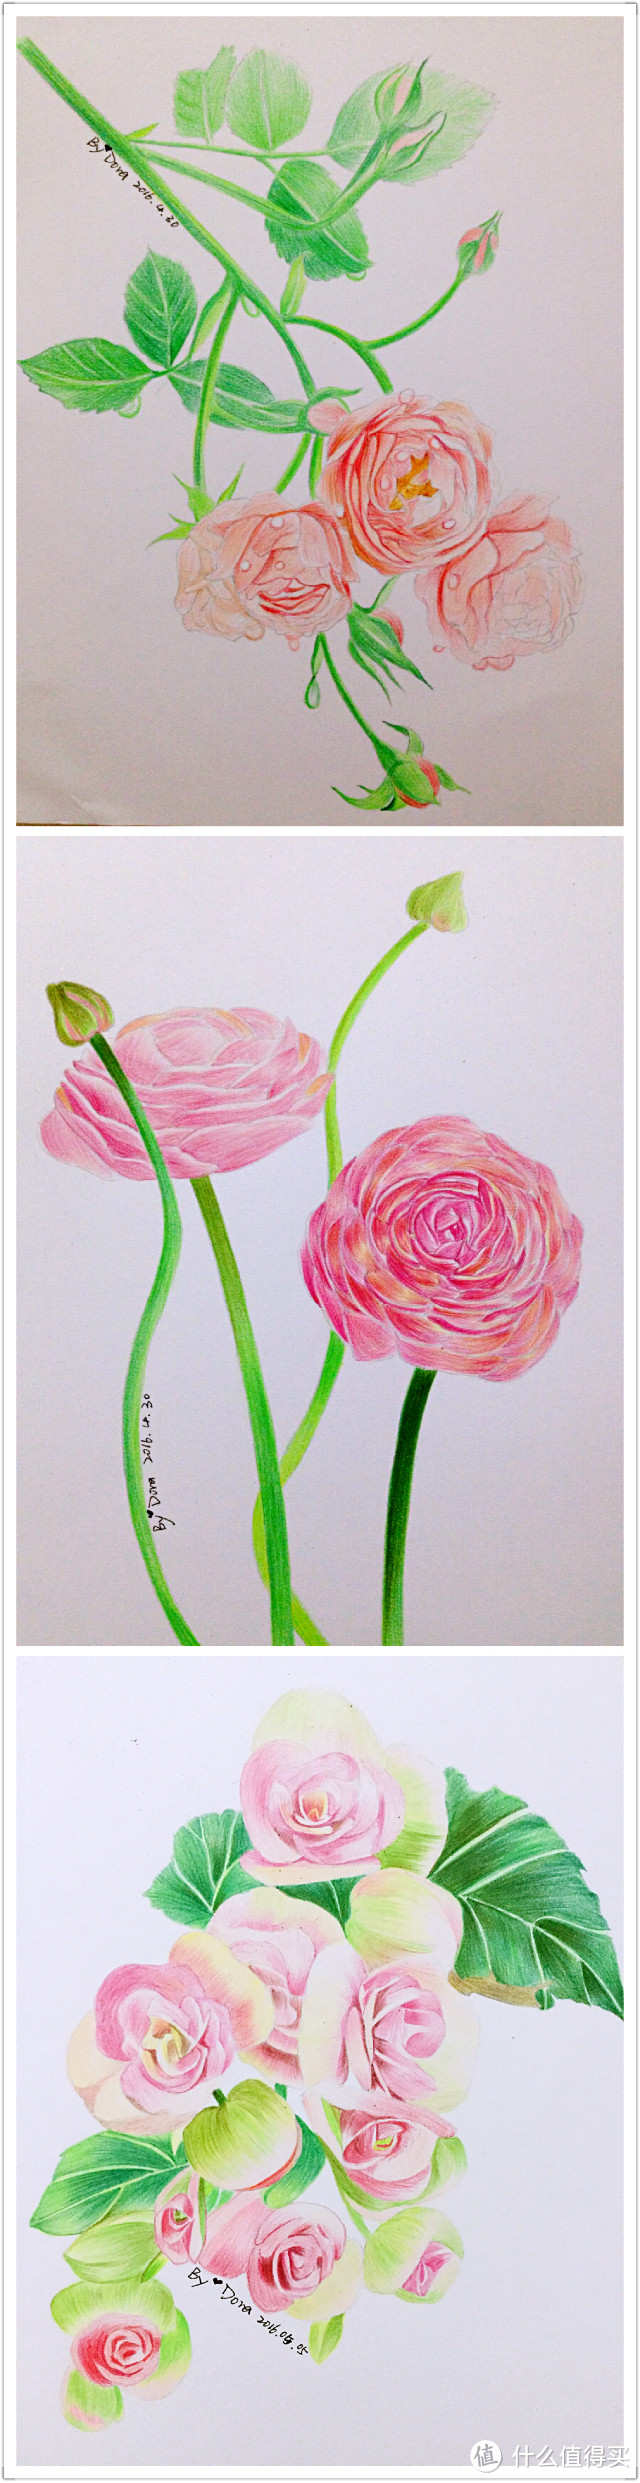 我画完了一整本《花之绘Ⅲ》——我的彩铅画记录